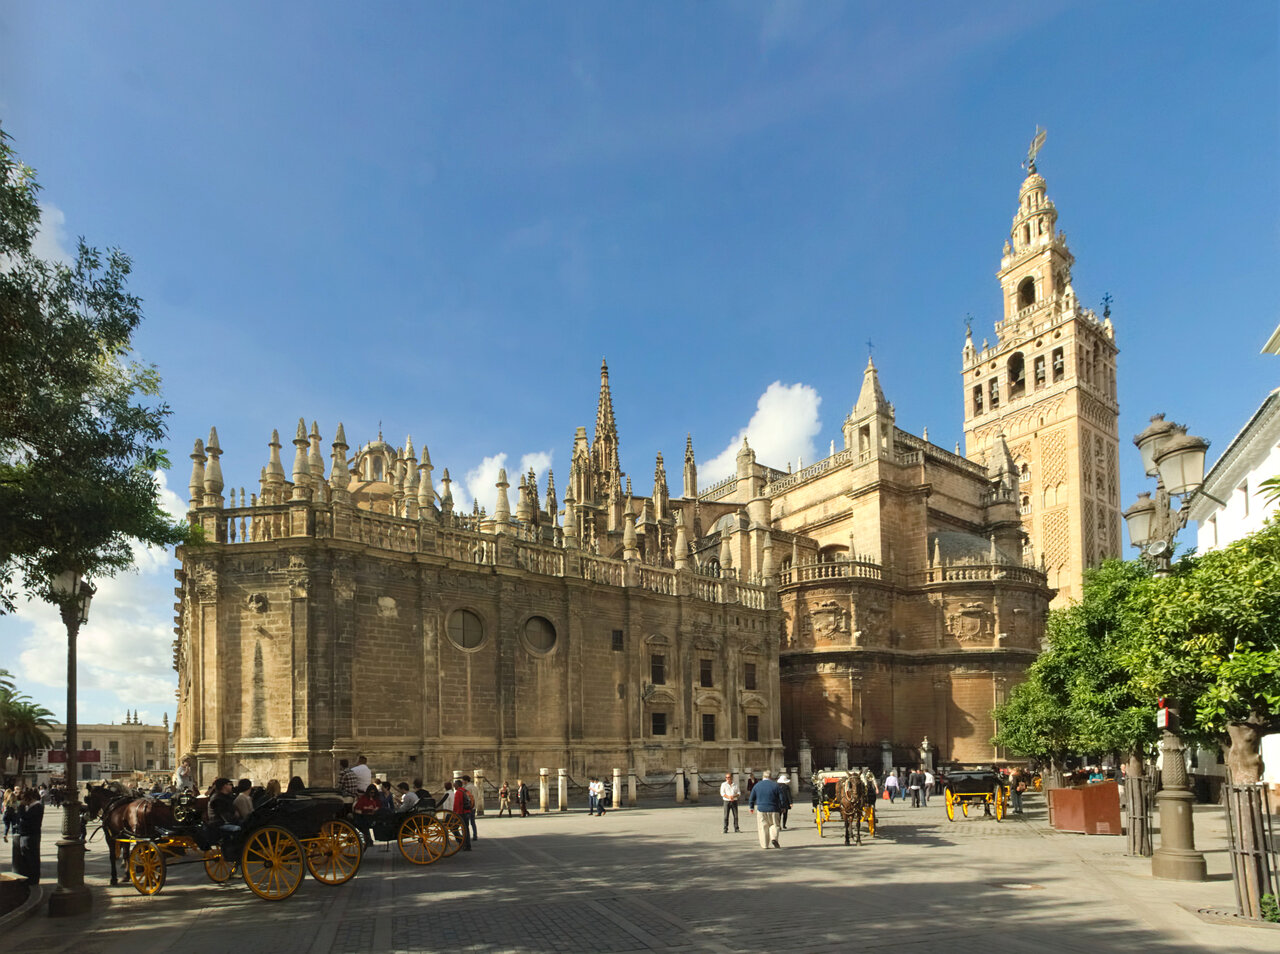 Севильский собор, католический храм, Plaza Virgen de los Reyes, 6, Севилья, Испания — Яндекс.Карты